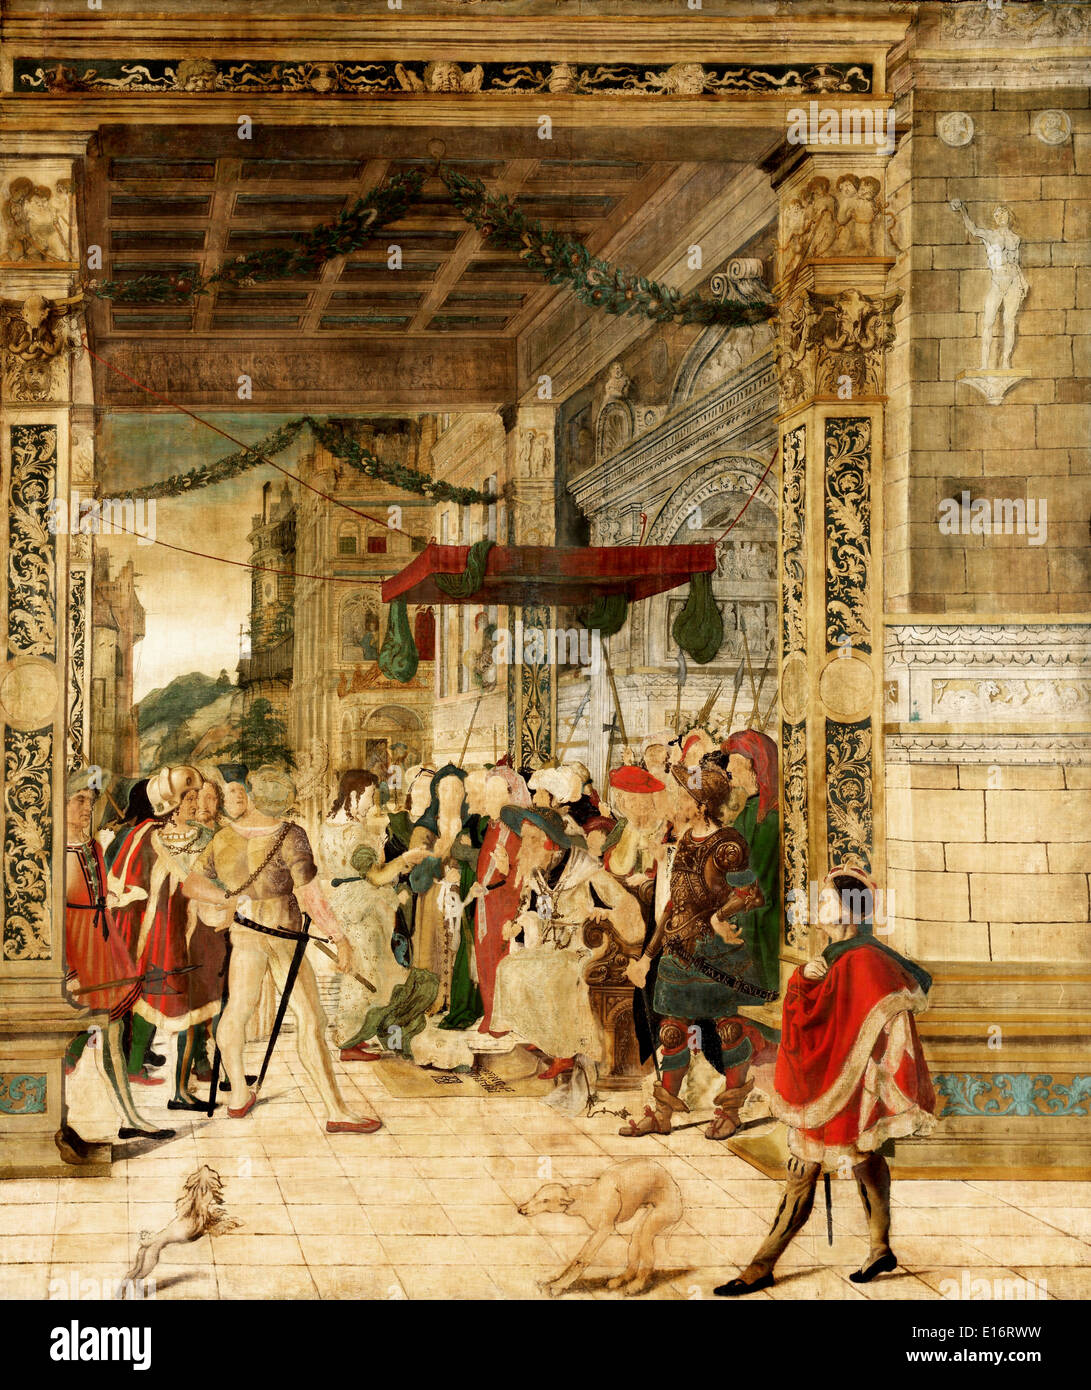 José interpretando los sueños del Faraón por Jorg Breu el joven , 1547 Foto de stock